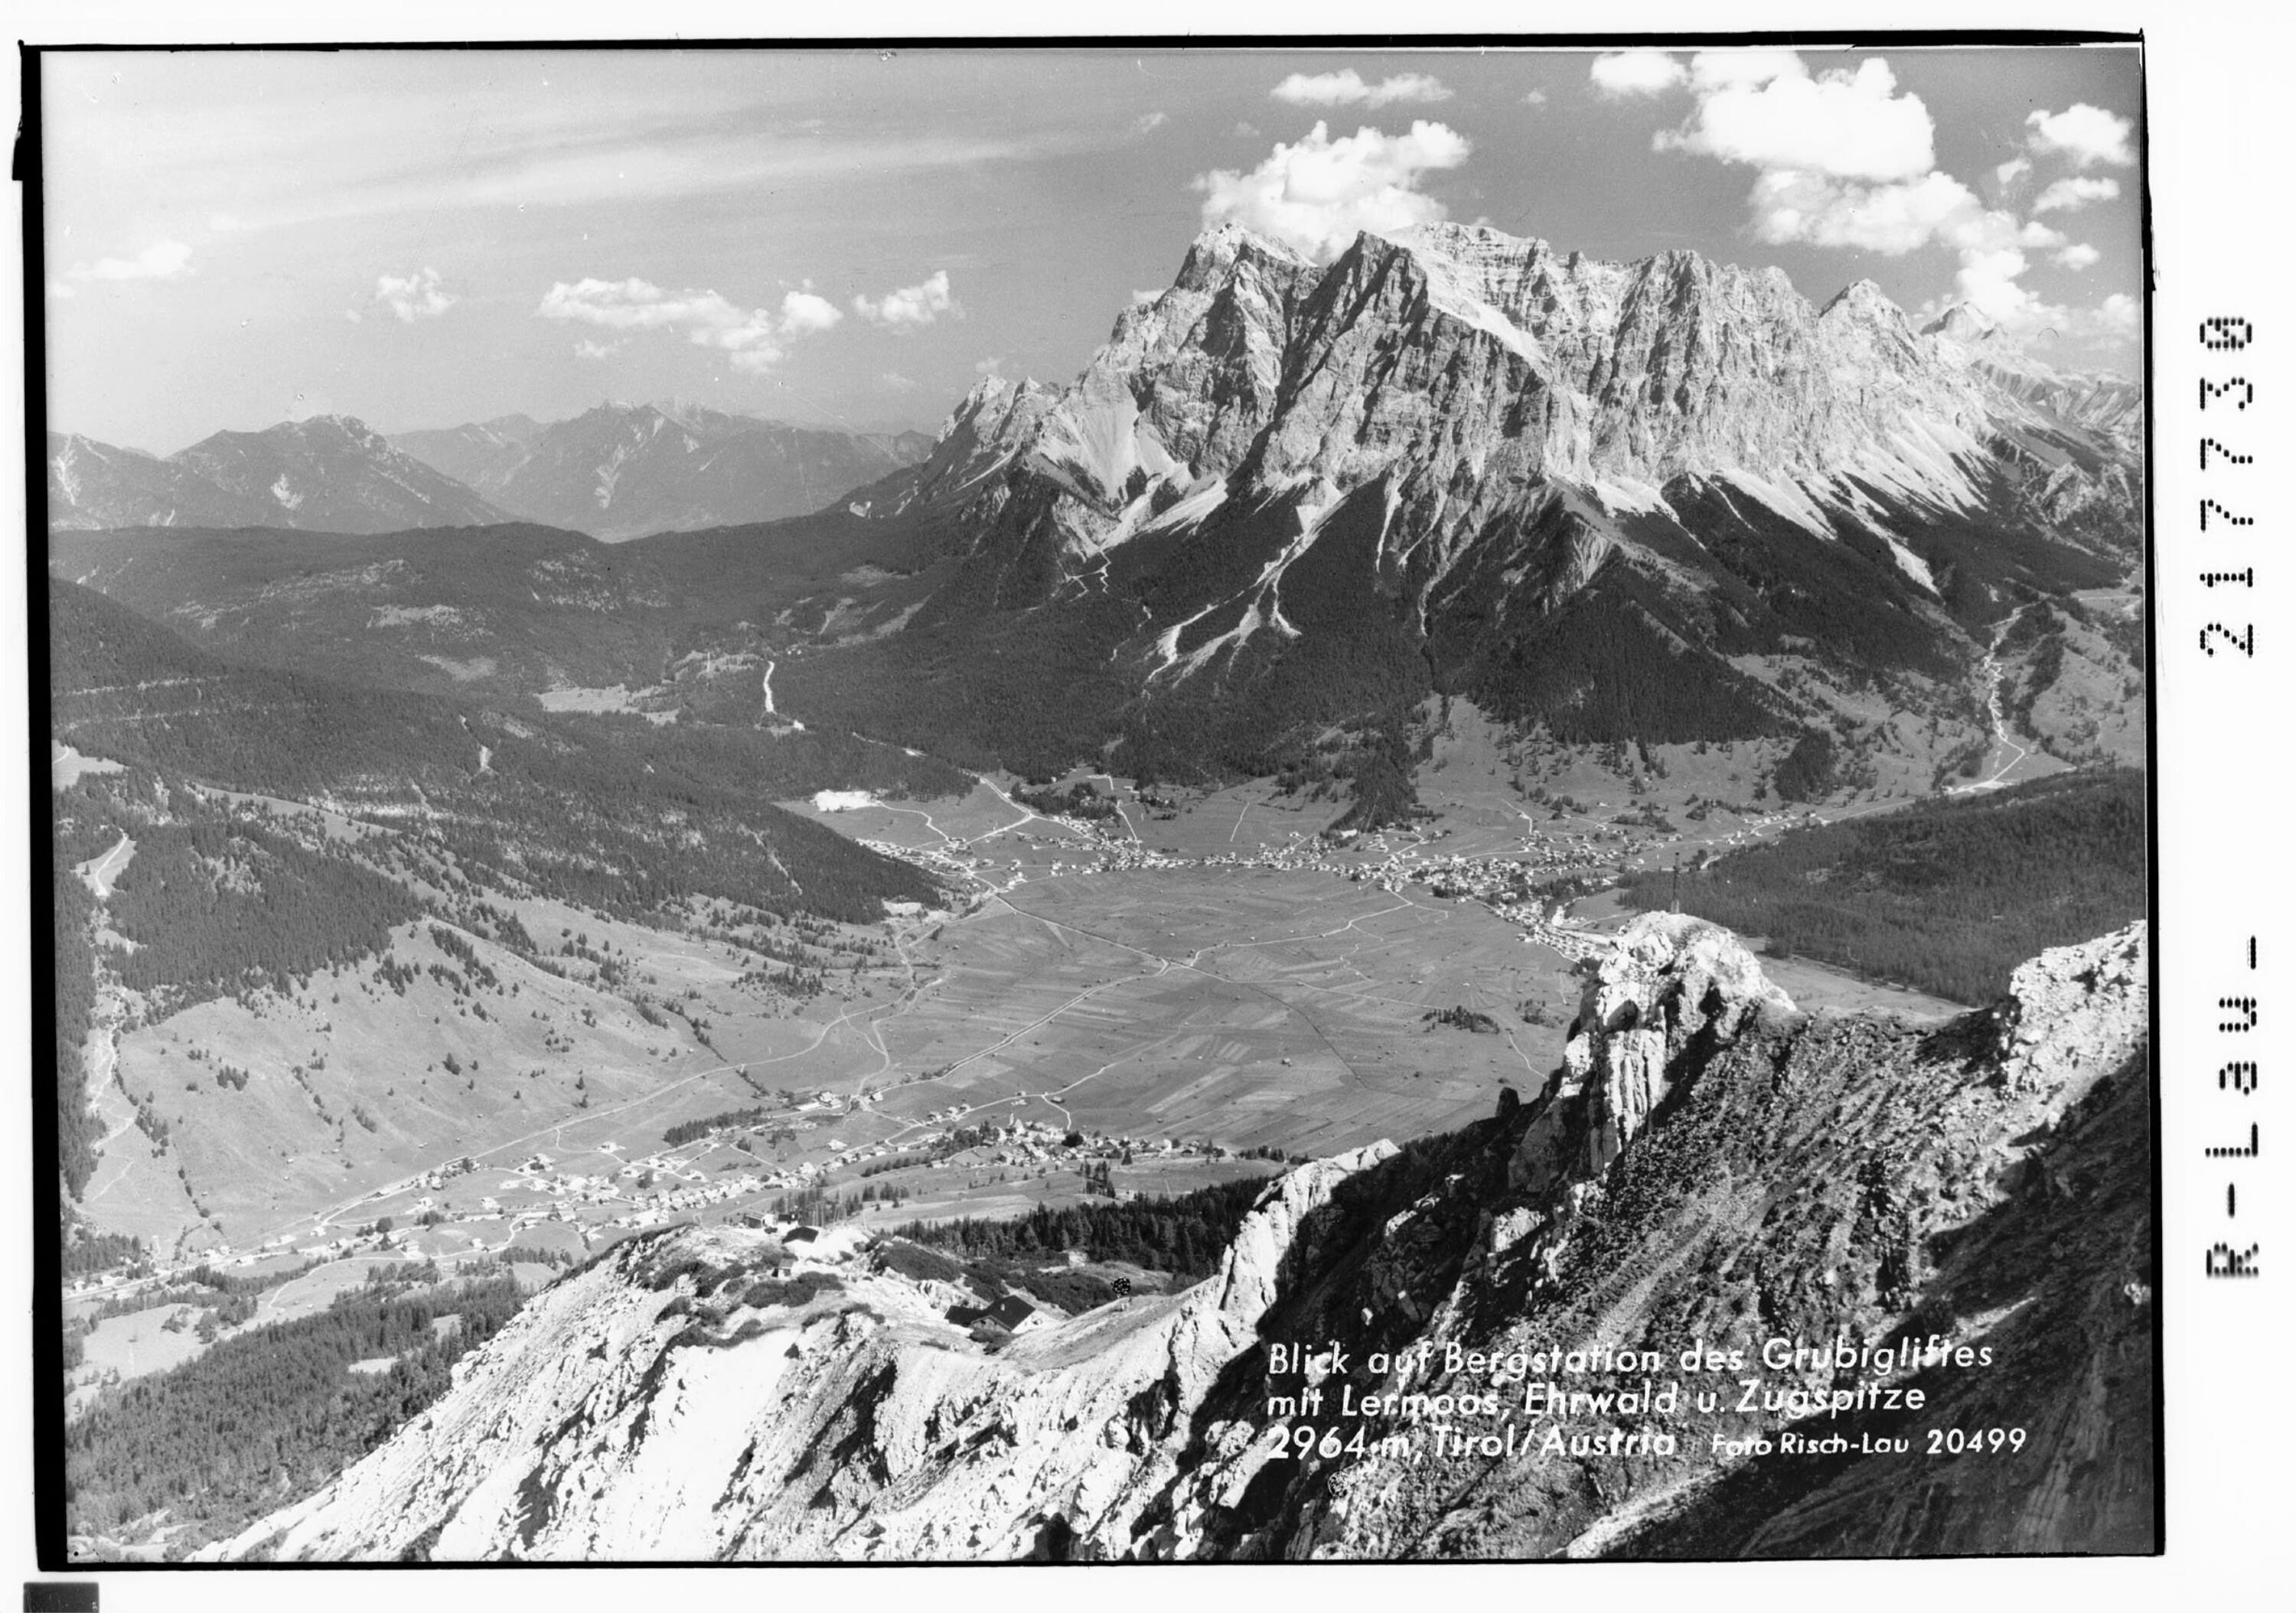 Blick auf Bergstation des Grubigliftes mit Lermoos / Ehrwald und Zugspitze 2964 m, Tirol / Austria></div>


    <hr>
    <div class=